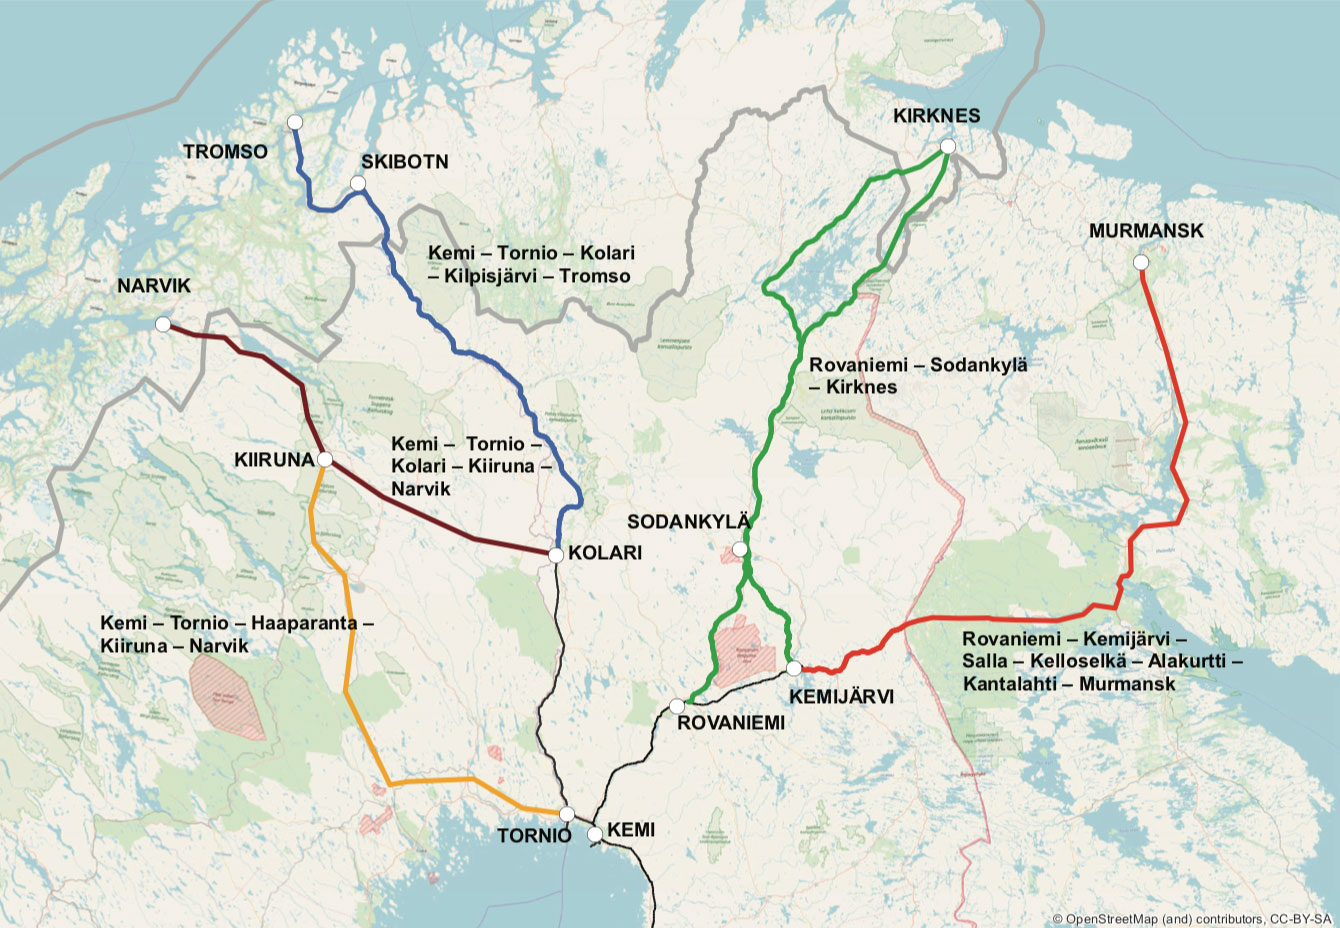 Arctic sea railway routes